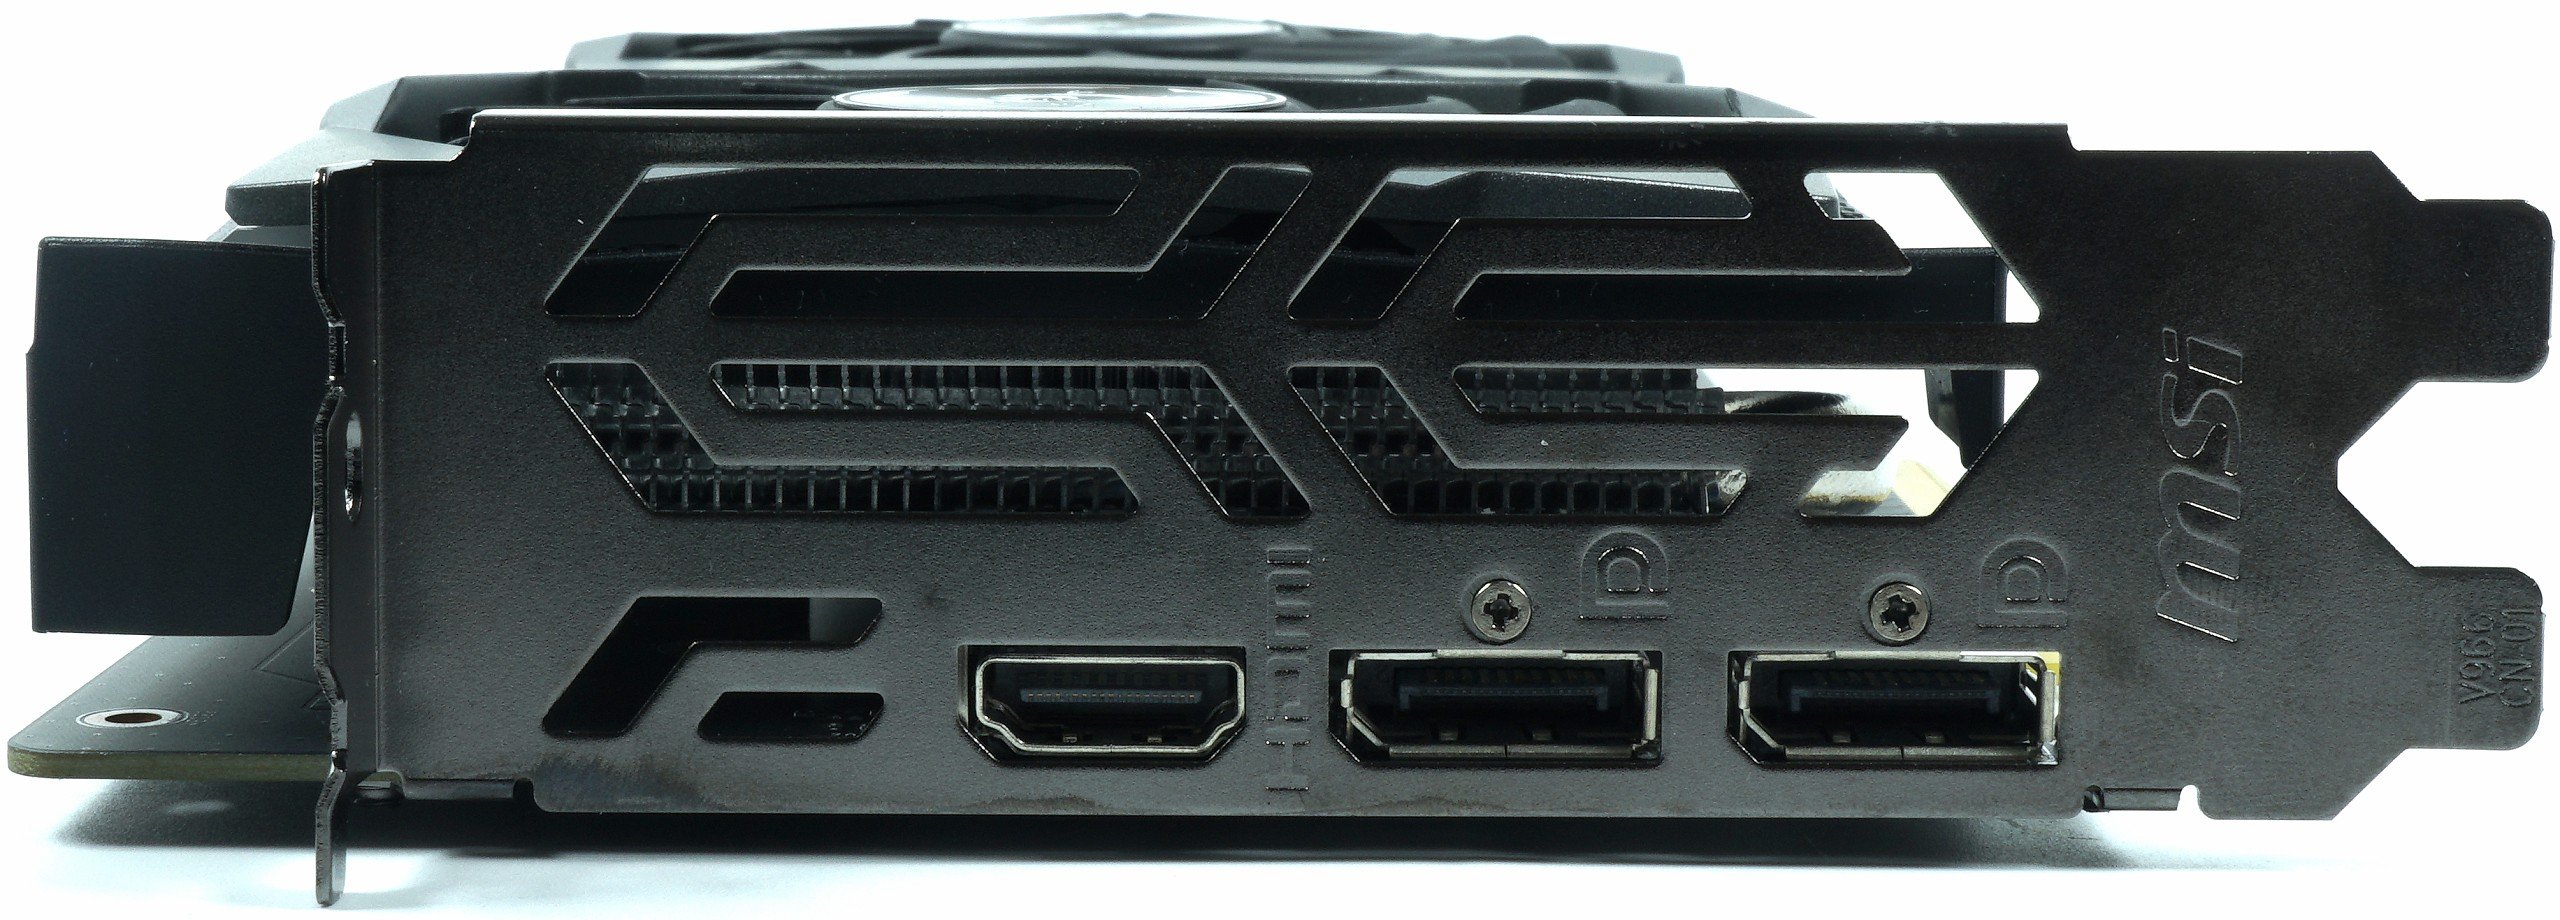 Image 12 : Test : GeForce GTX 1650, le petit Turing galère face à la Radeon RX 570